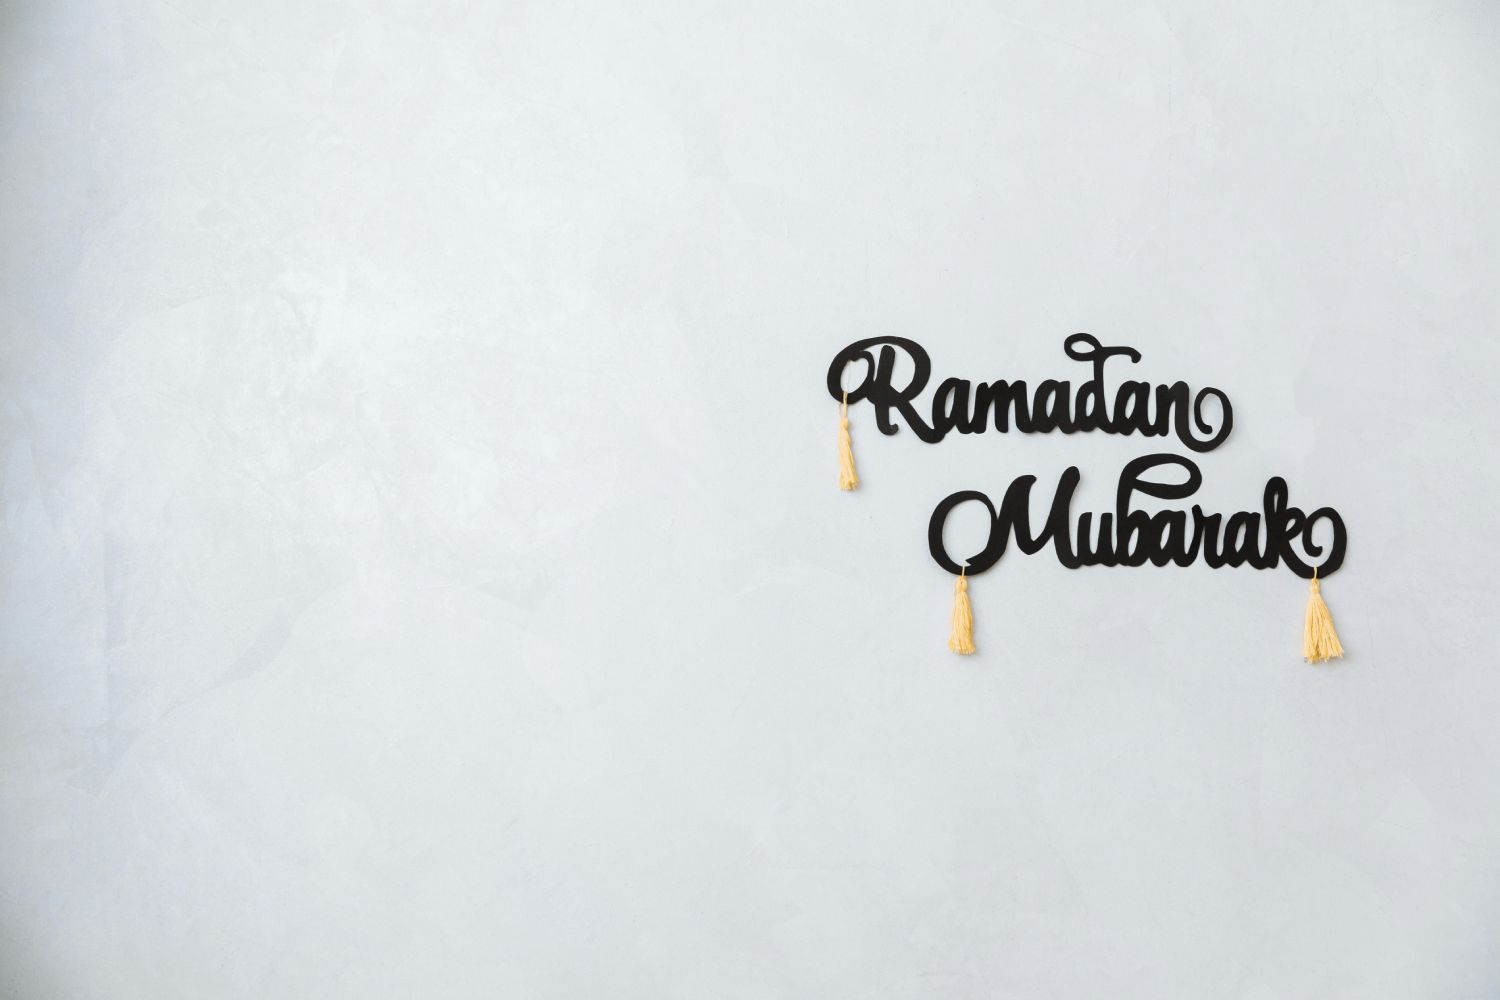 Magic of Ramadan with Shawarma